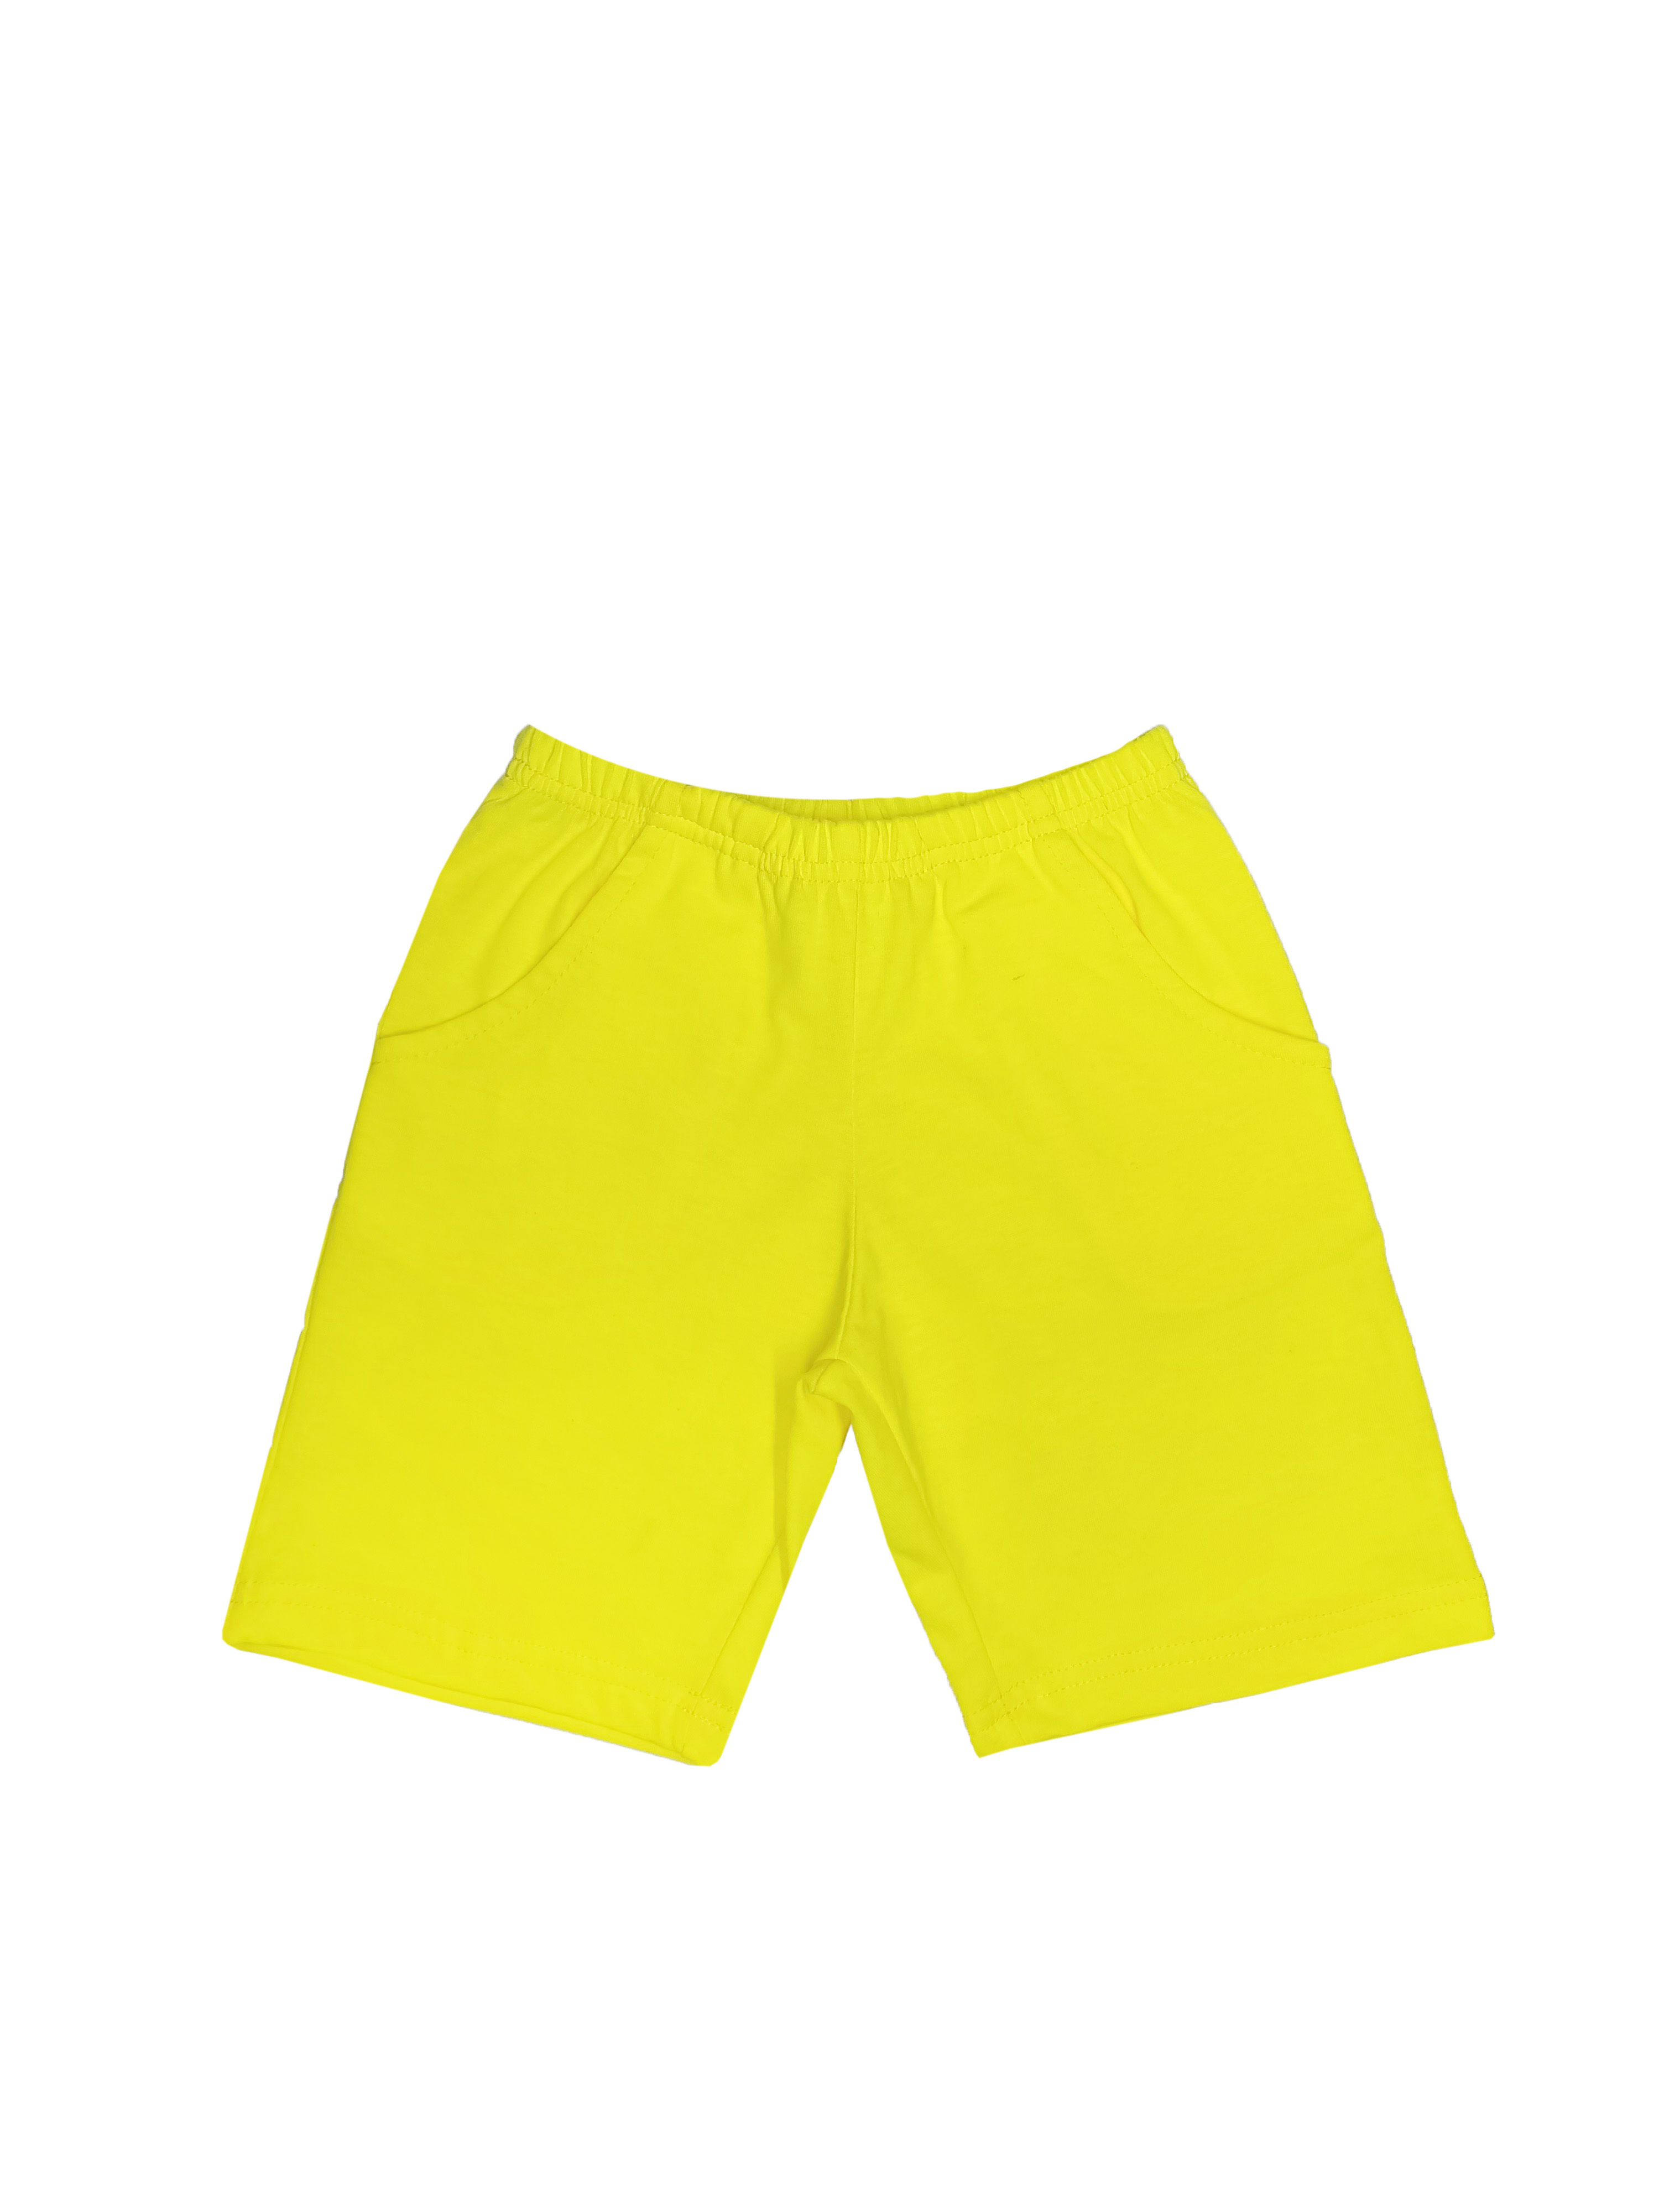 Шорты детские Детрик желтые р.98 Ш-0318км7 шорты для мальчиков желтые однотонные